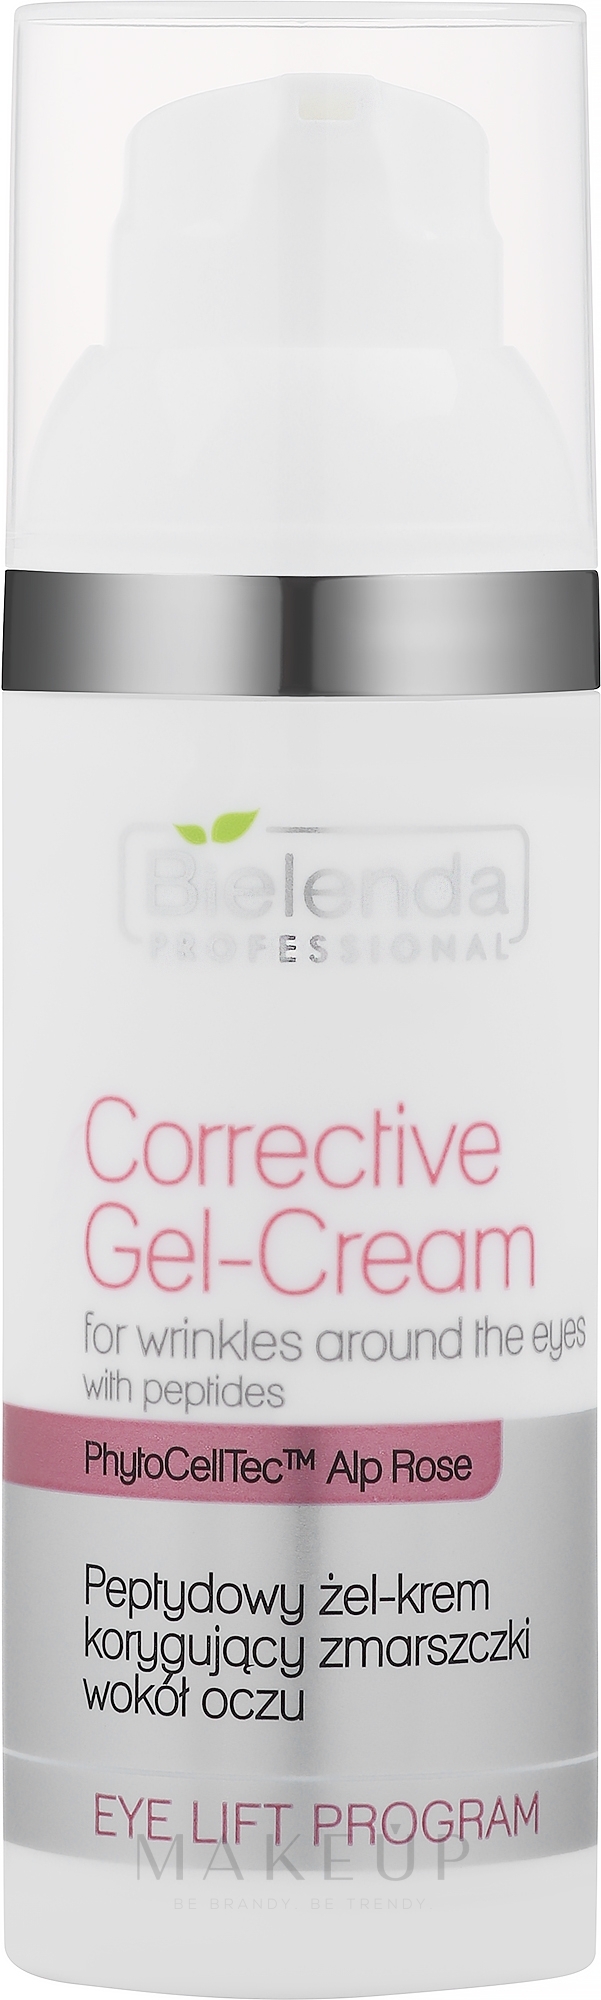 Korrigierende Gesichtsgel-Creme mit Peptiden für die Augenpartie - Bielenda Professional Eye Lift Program Corrective Gel-Cream — Foto 50 ml